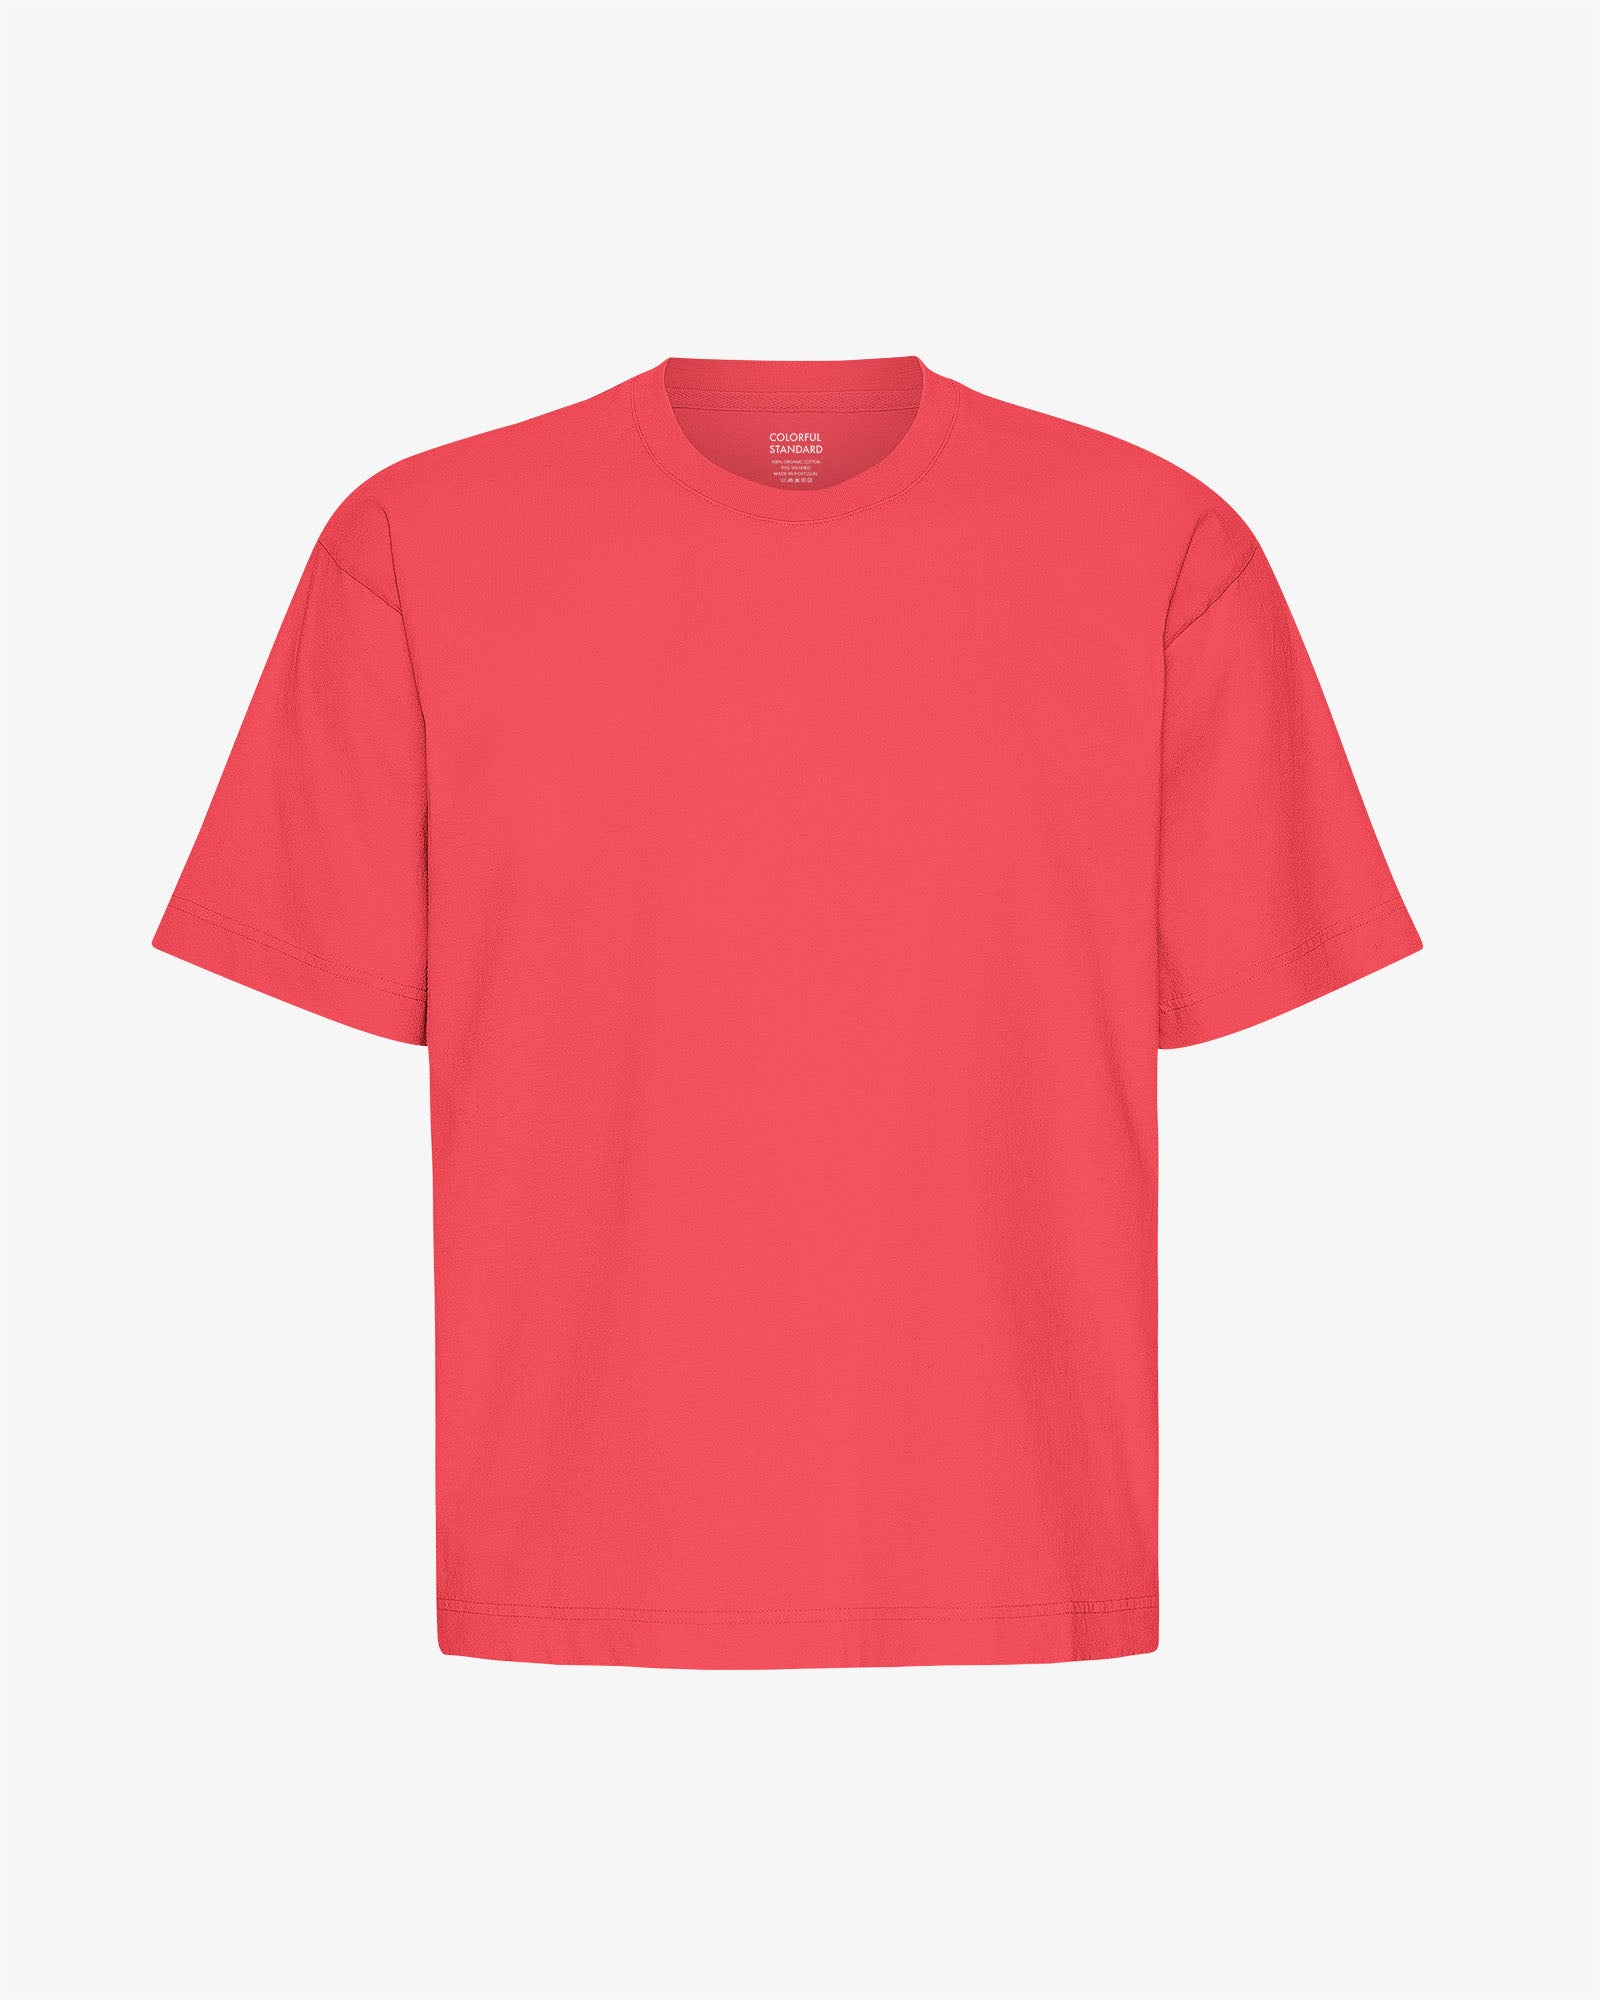 Oversized Organic T-Shirt - Red Tangerine